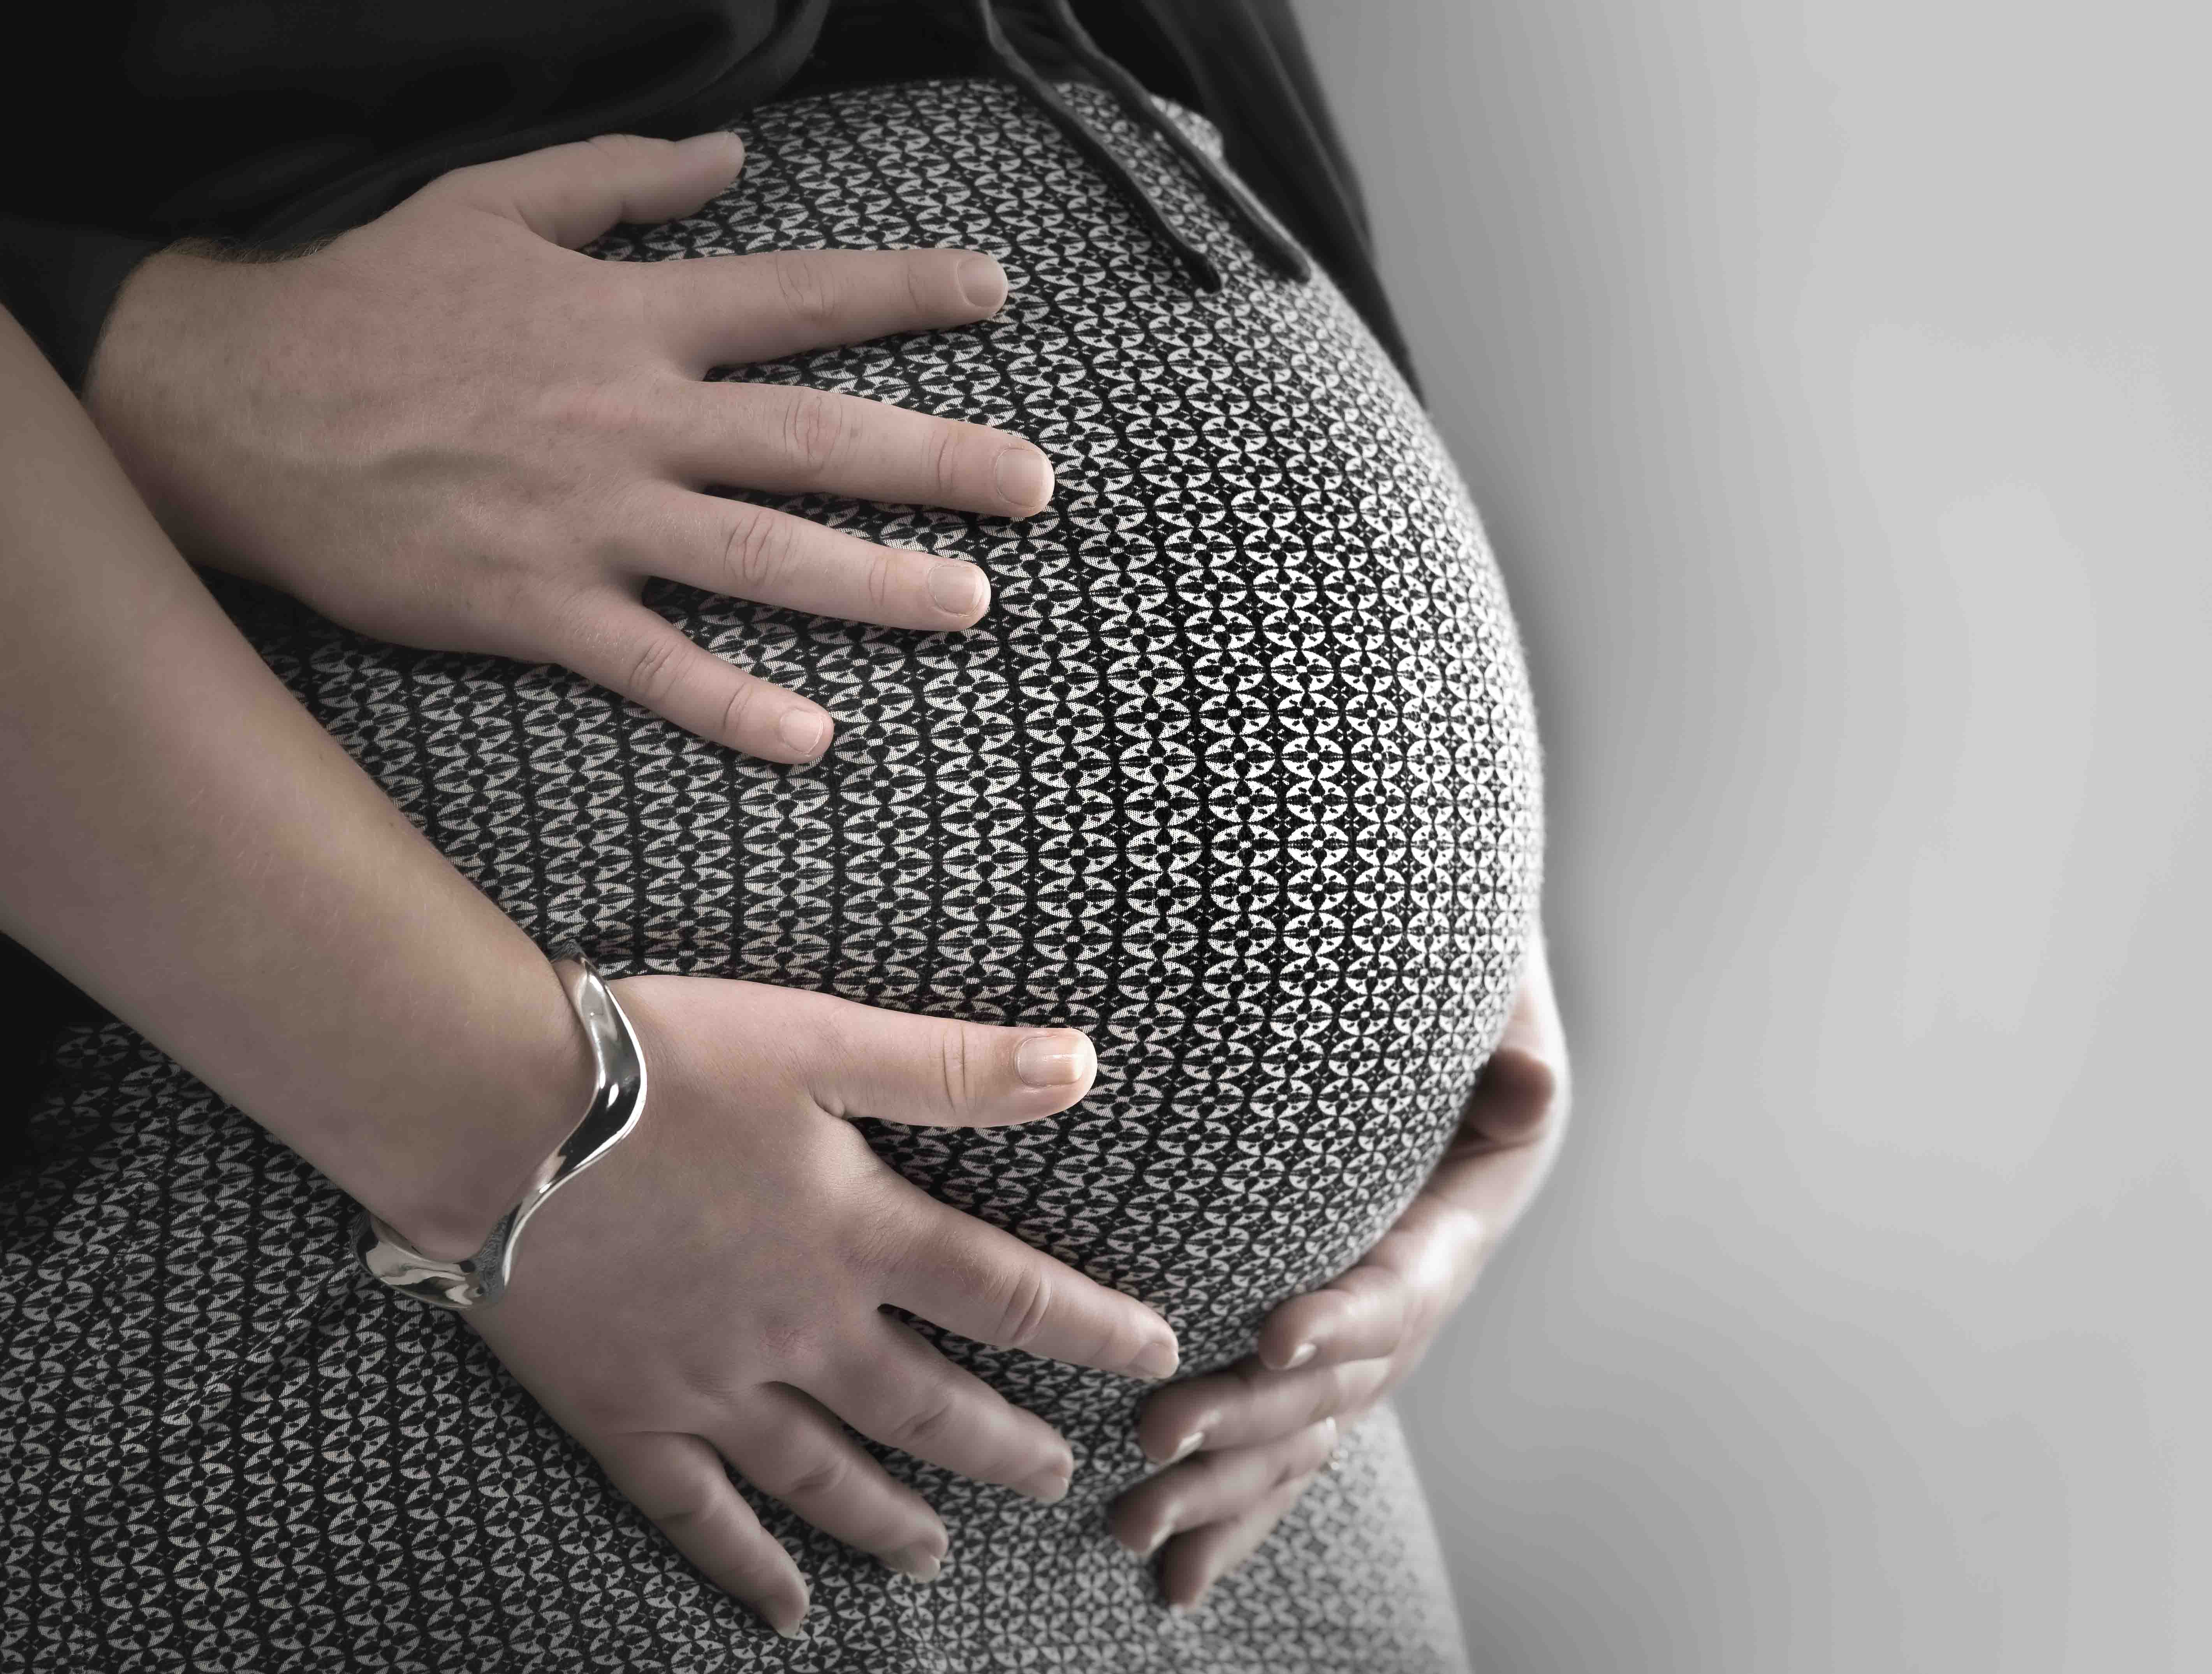 Zwangerschapsfotografie met partner, drie handen op zwangerschapsbuik close-up met een zwart met wit rokje gefotografeerd in fotostudio Rotterdam. www.marijnissenfotografie.nl